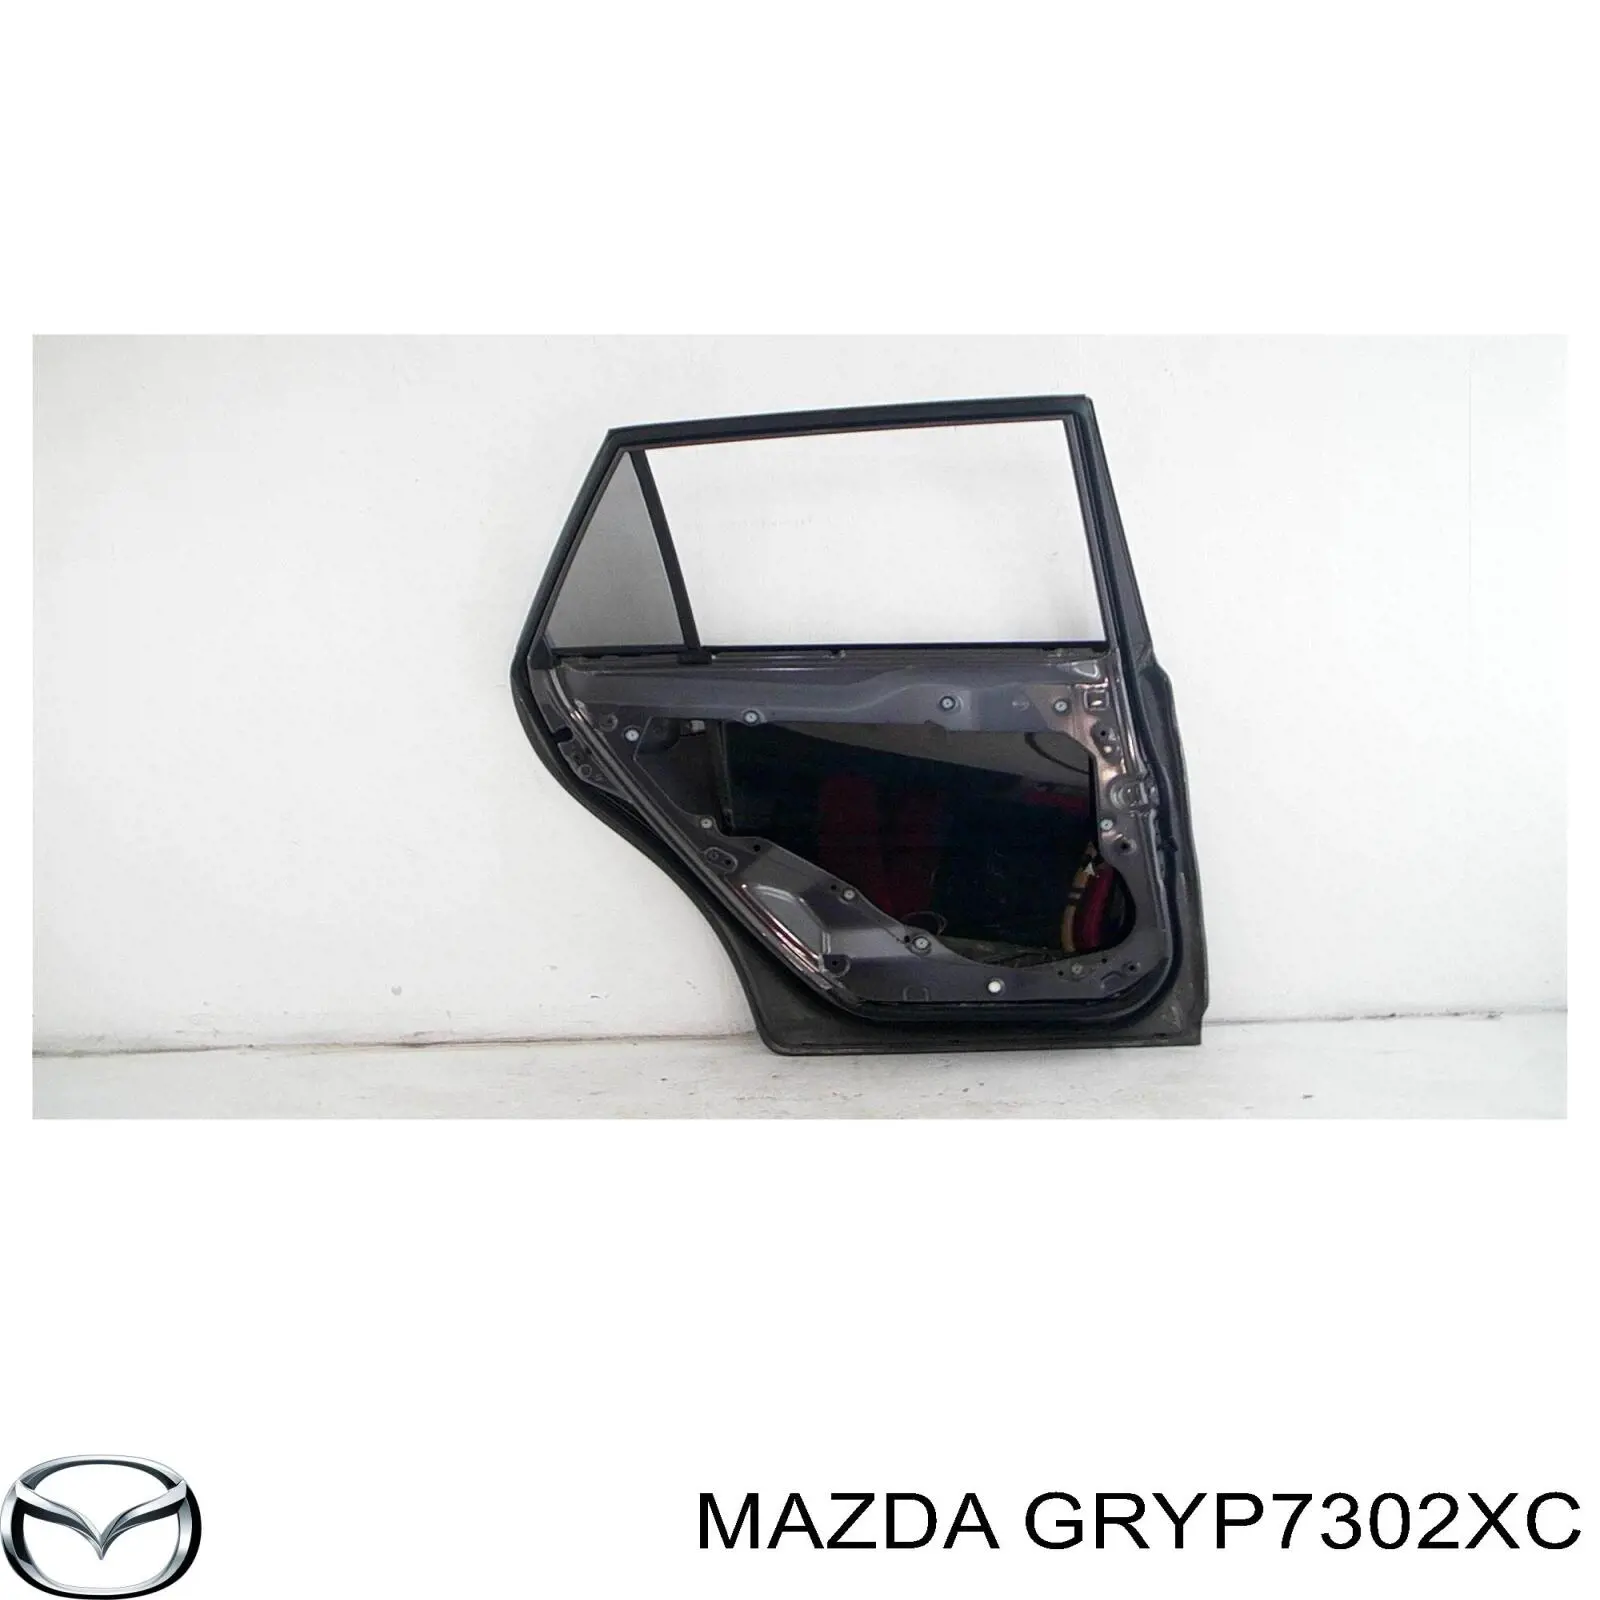 GRYP7302XE Mazda porta traseira esquerda